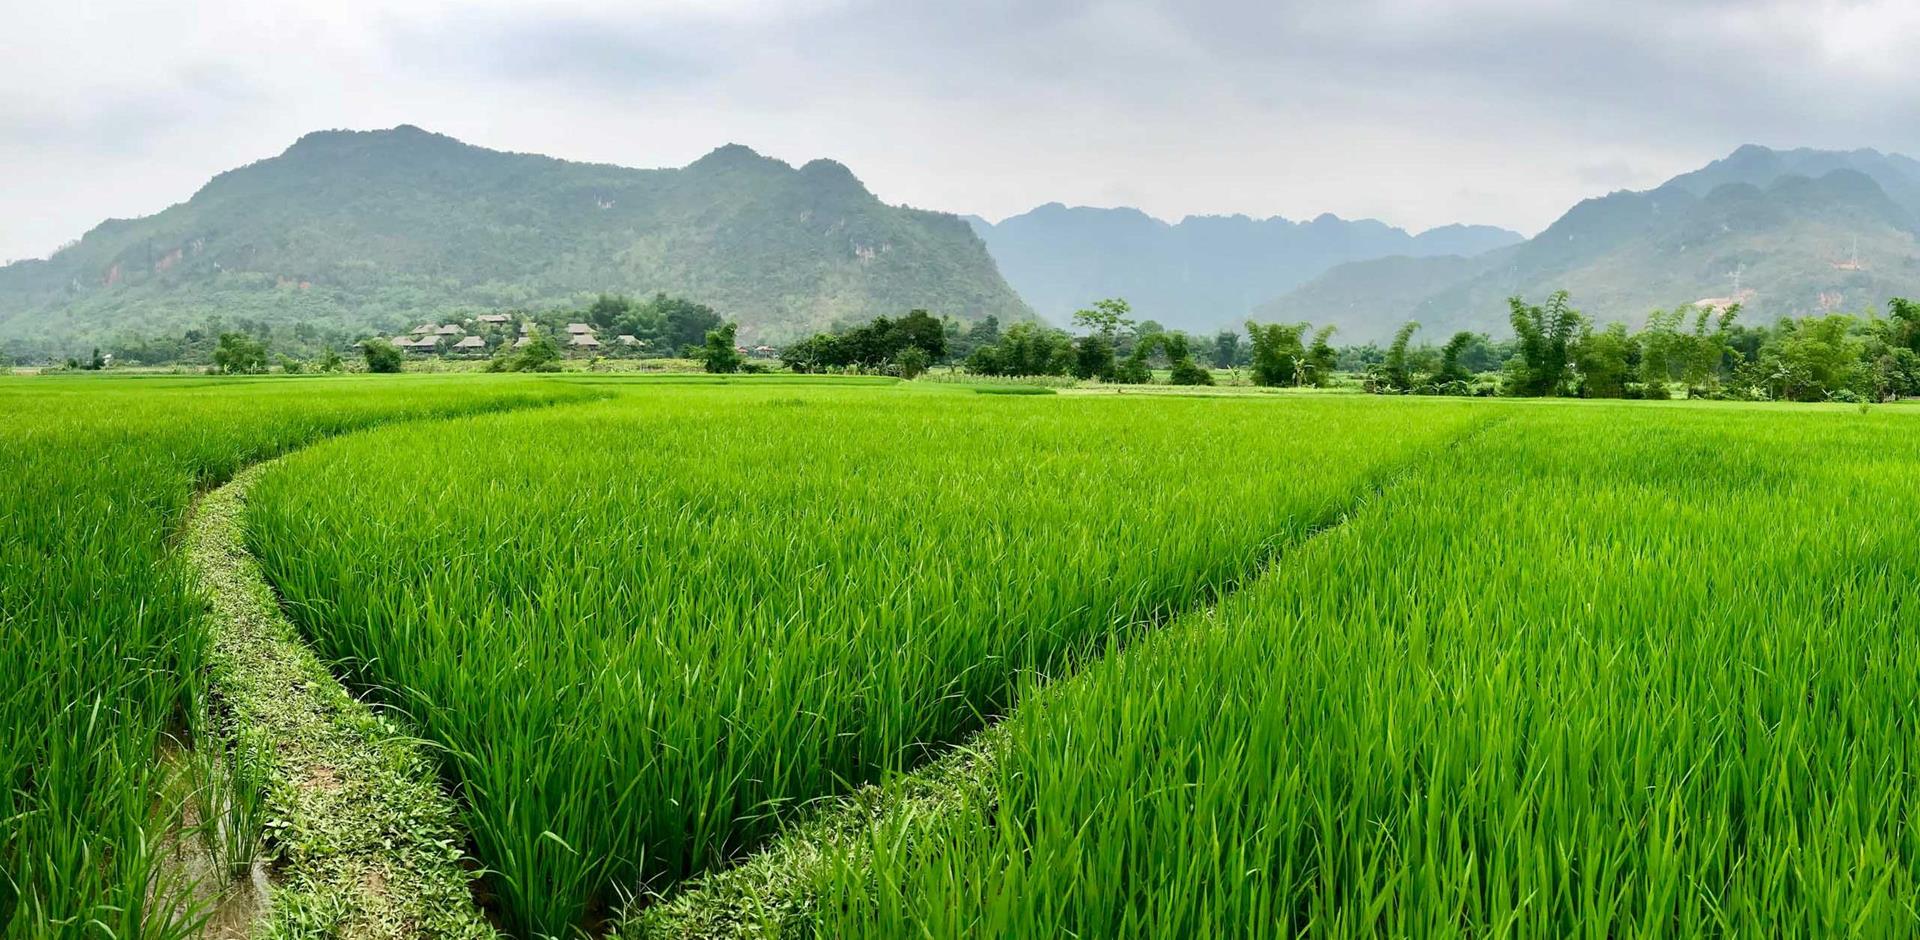 A&K itinerary: The hidden world of Mai Chau, Vietnam